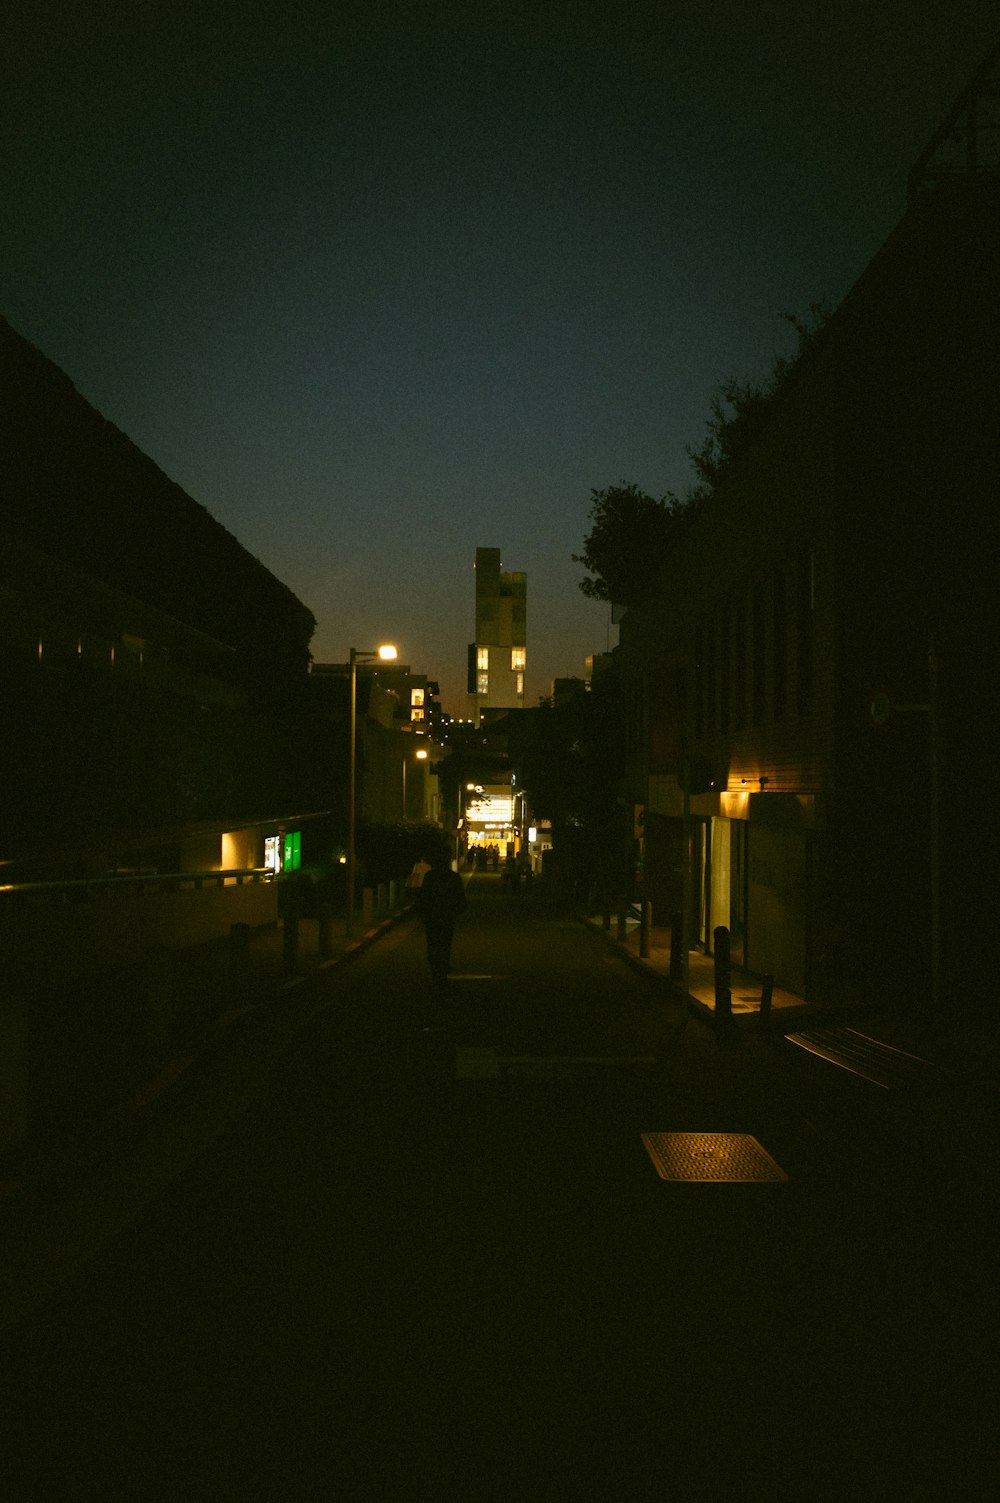 una persona caminando por una calle oscura por la noche